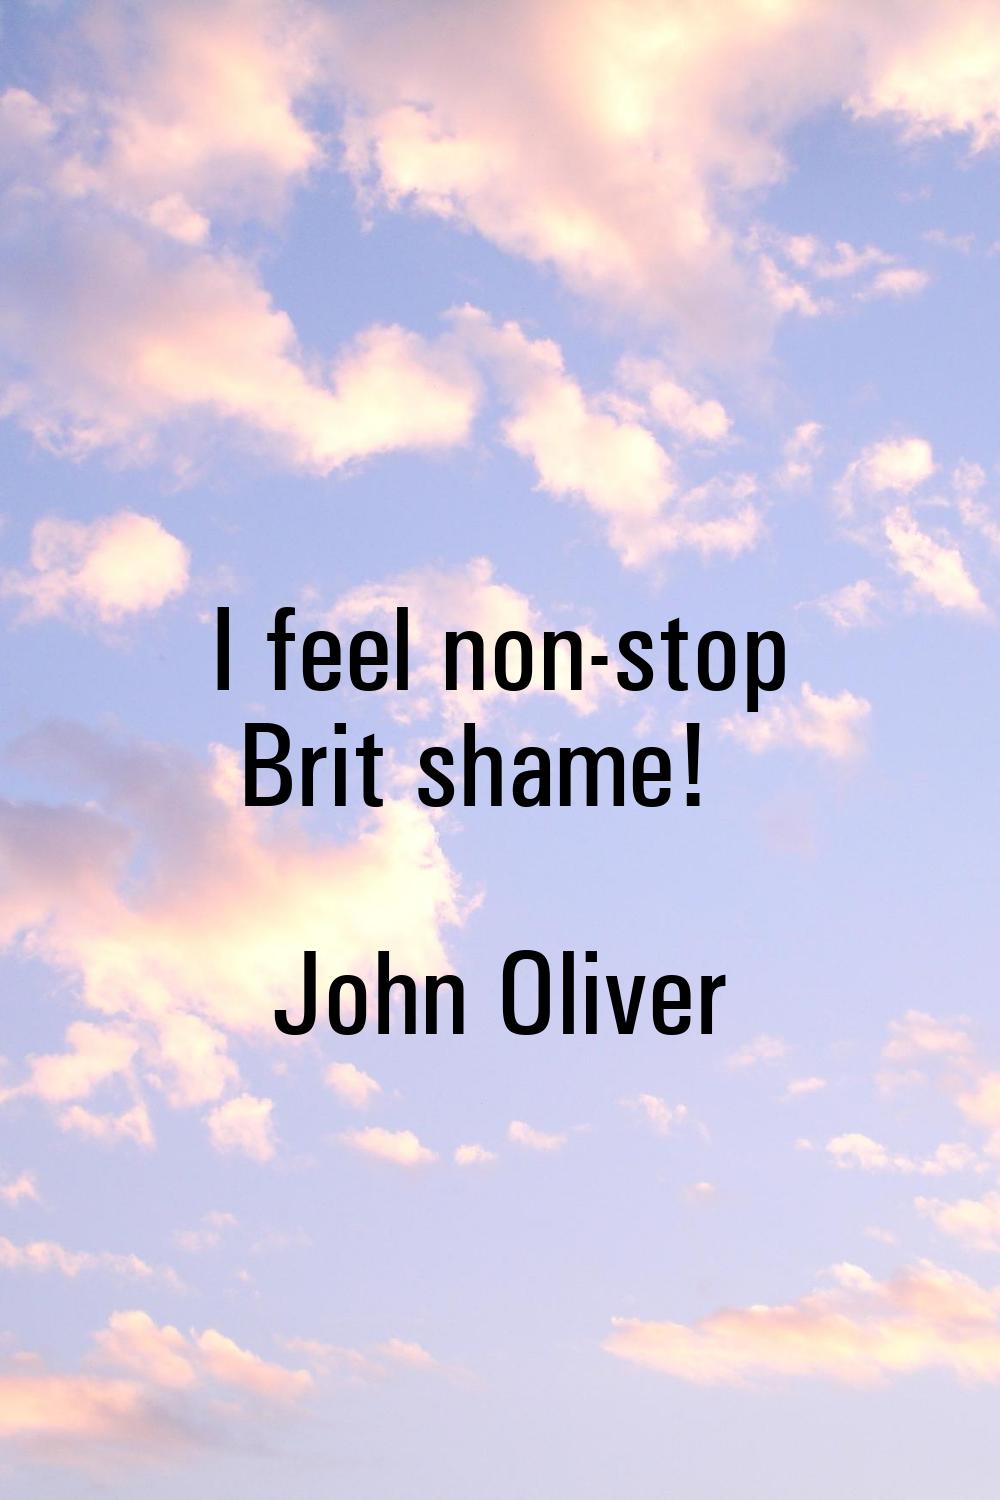 I feel non-stop Brit shame!